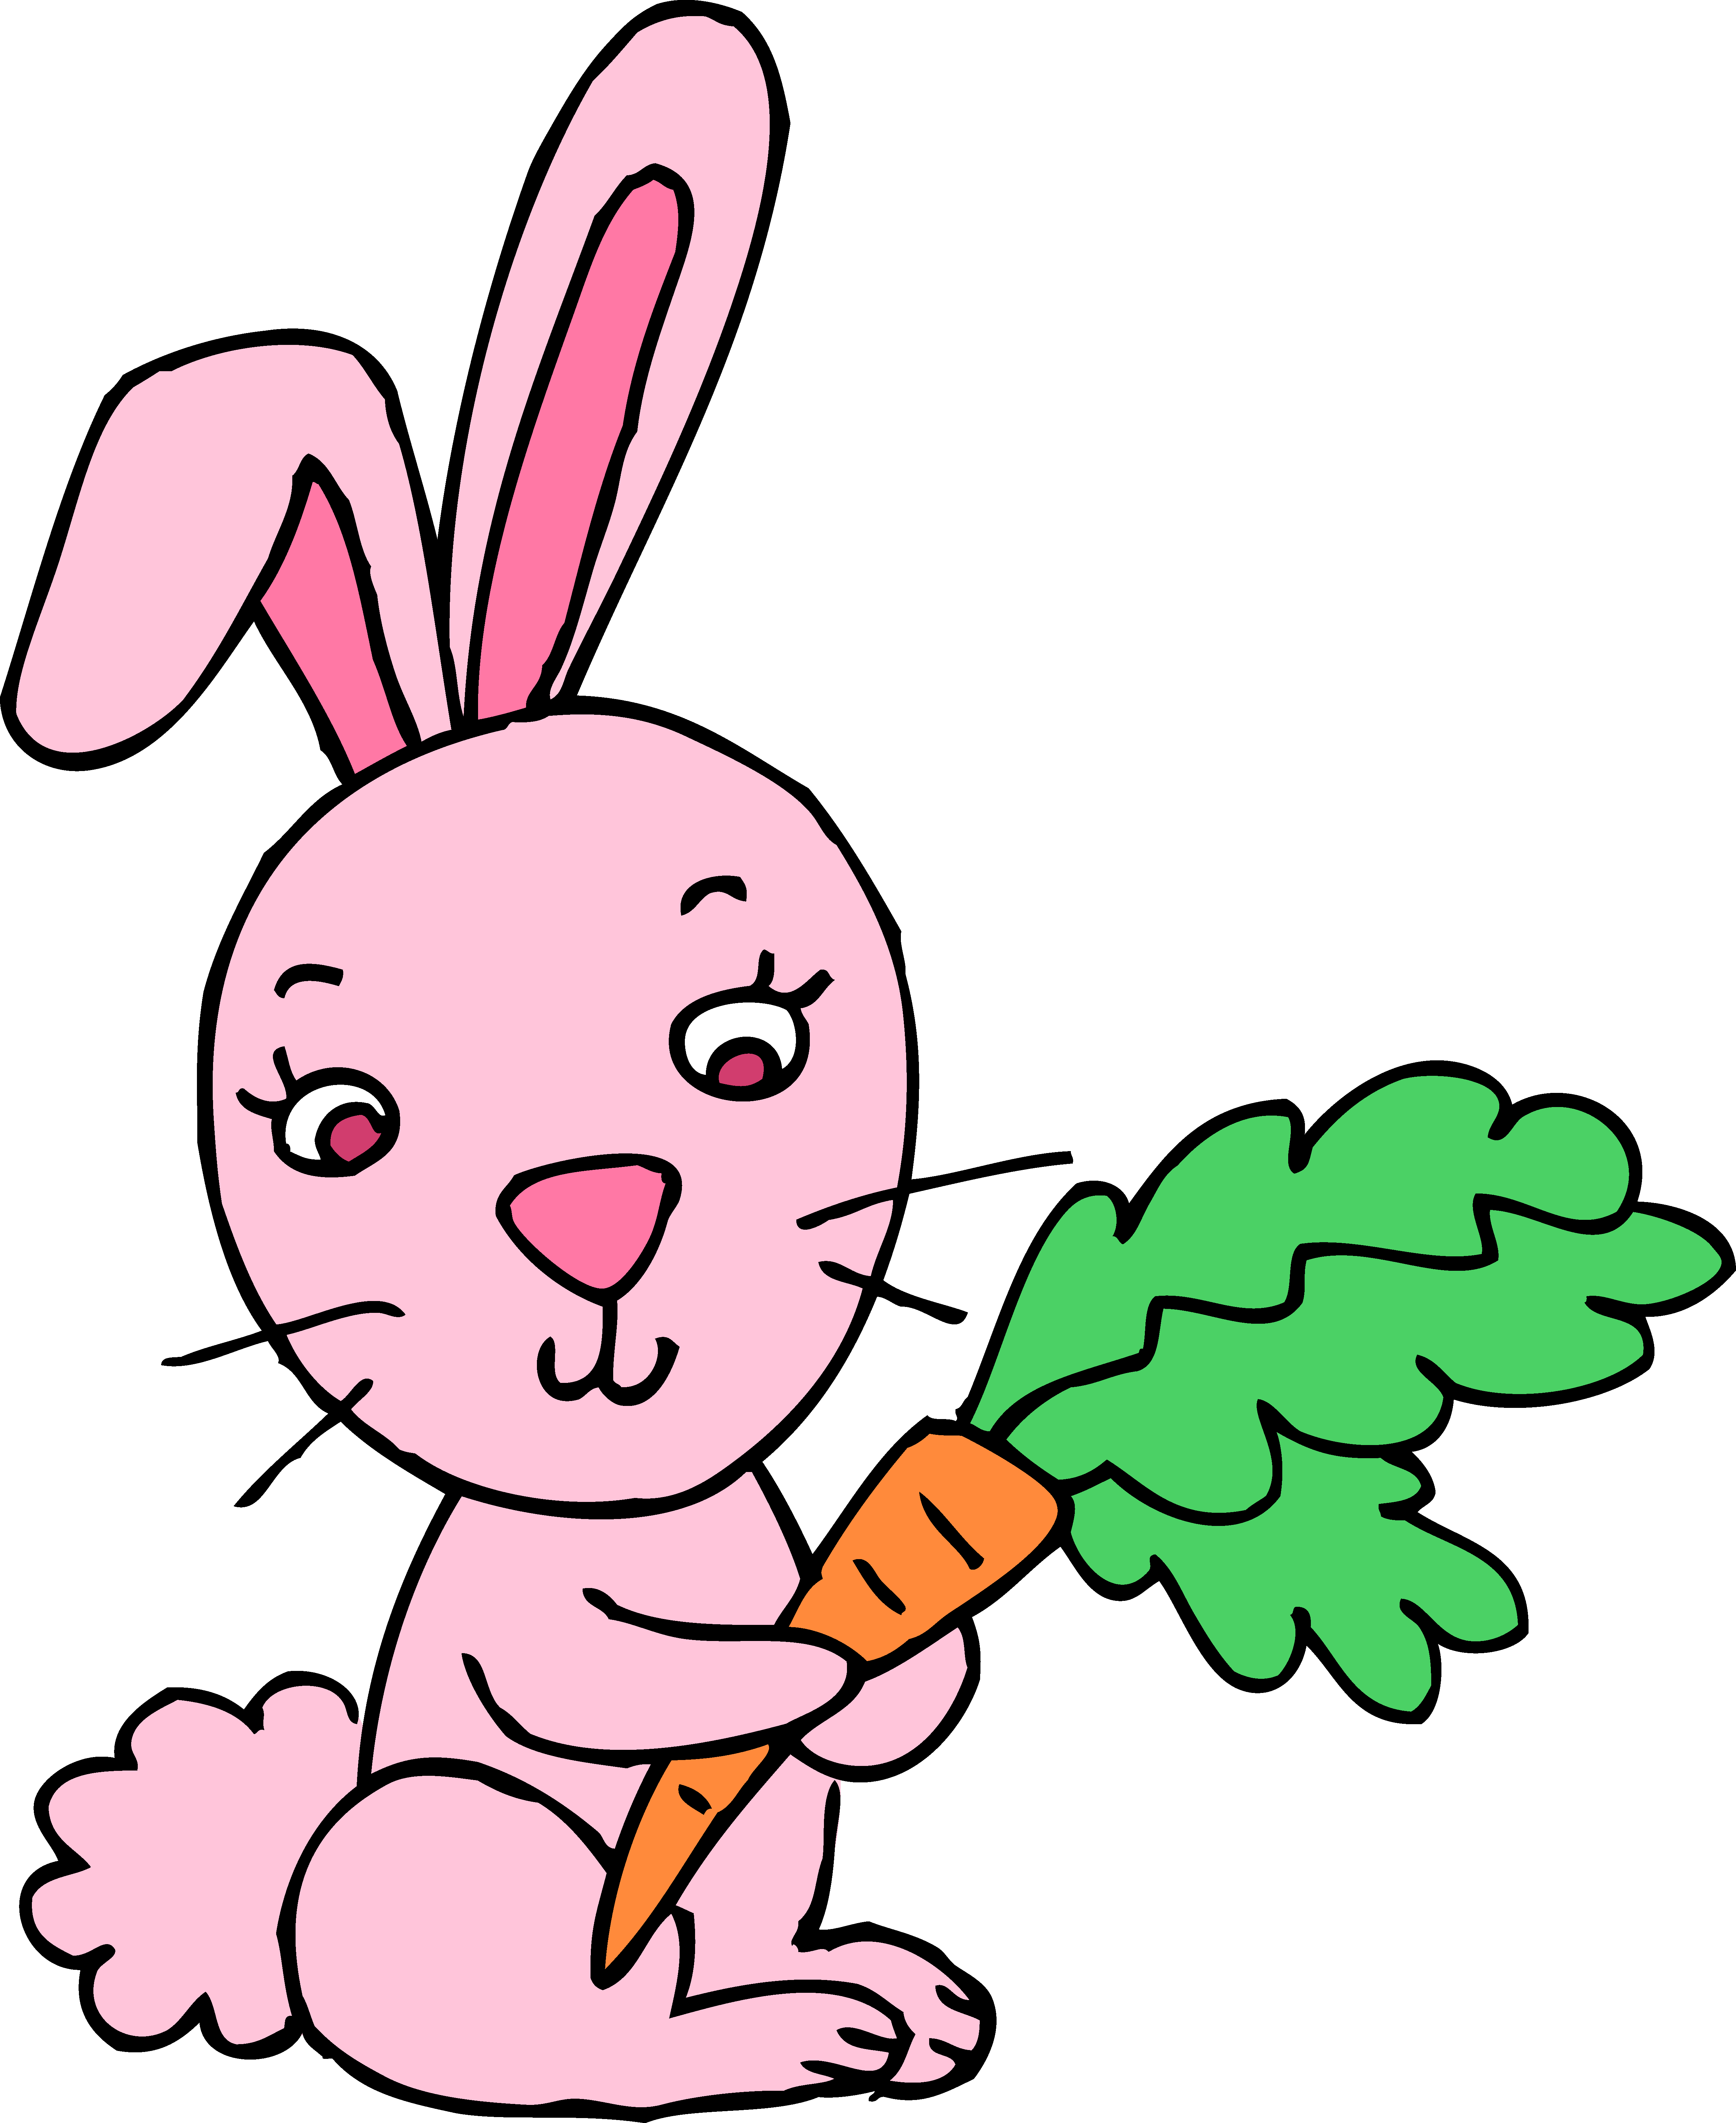 Free Cartoon Bunny Holding a 